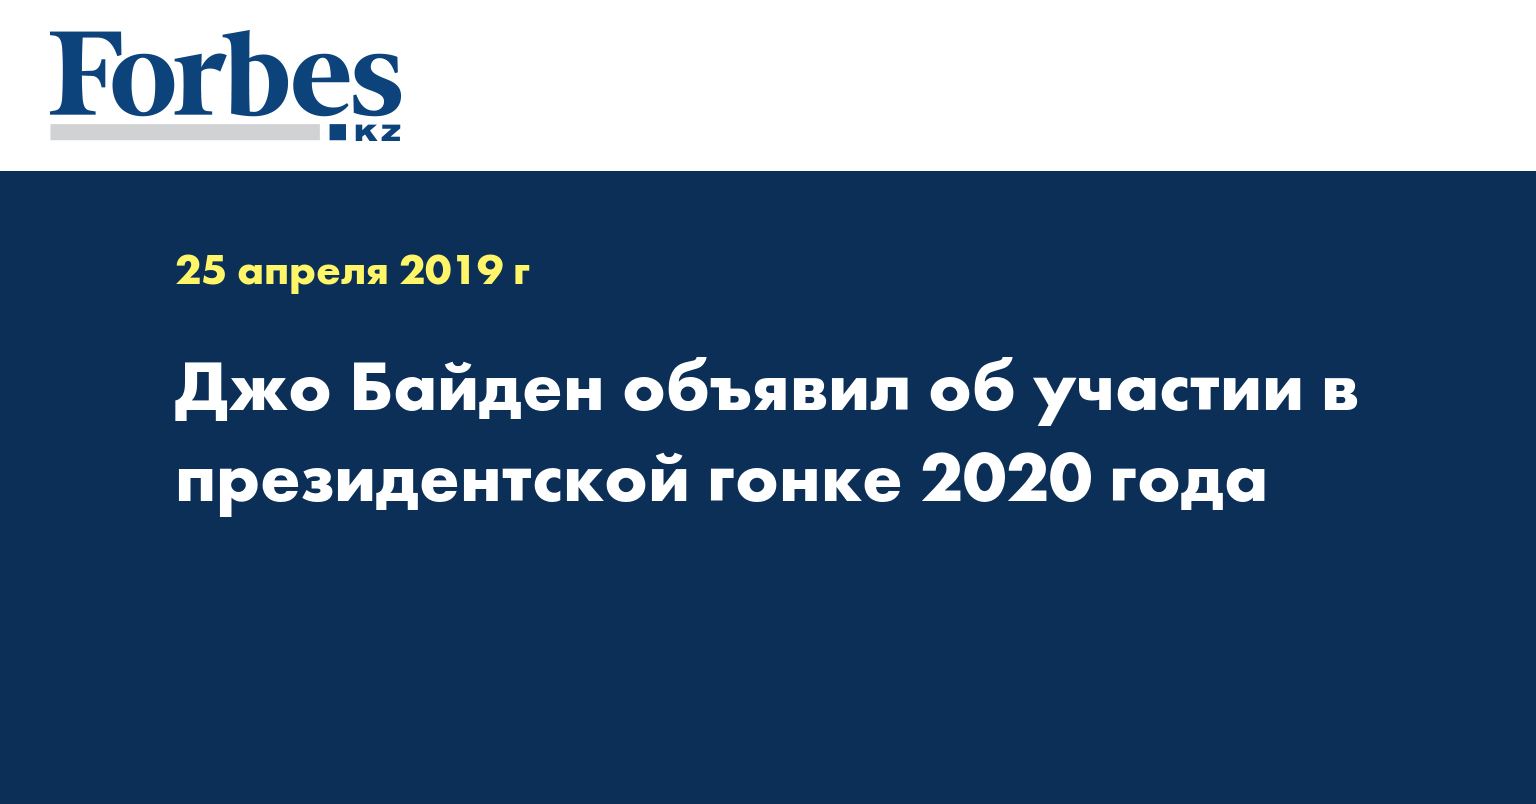 Джо Байден объявил об участии в президентской гонке 2020 года